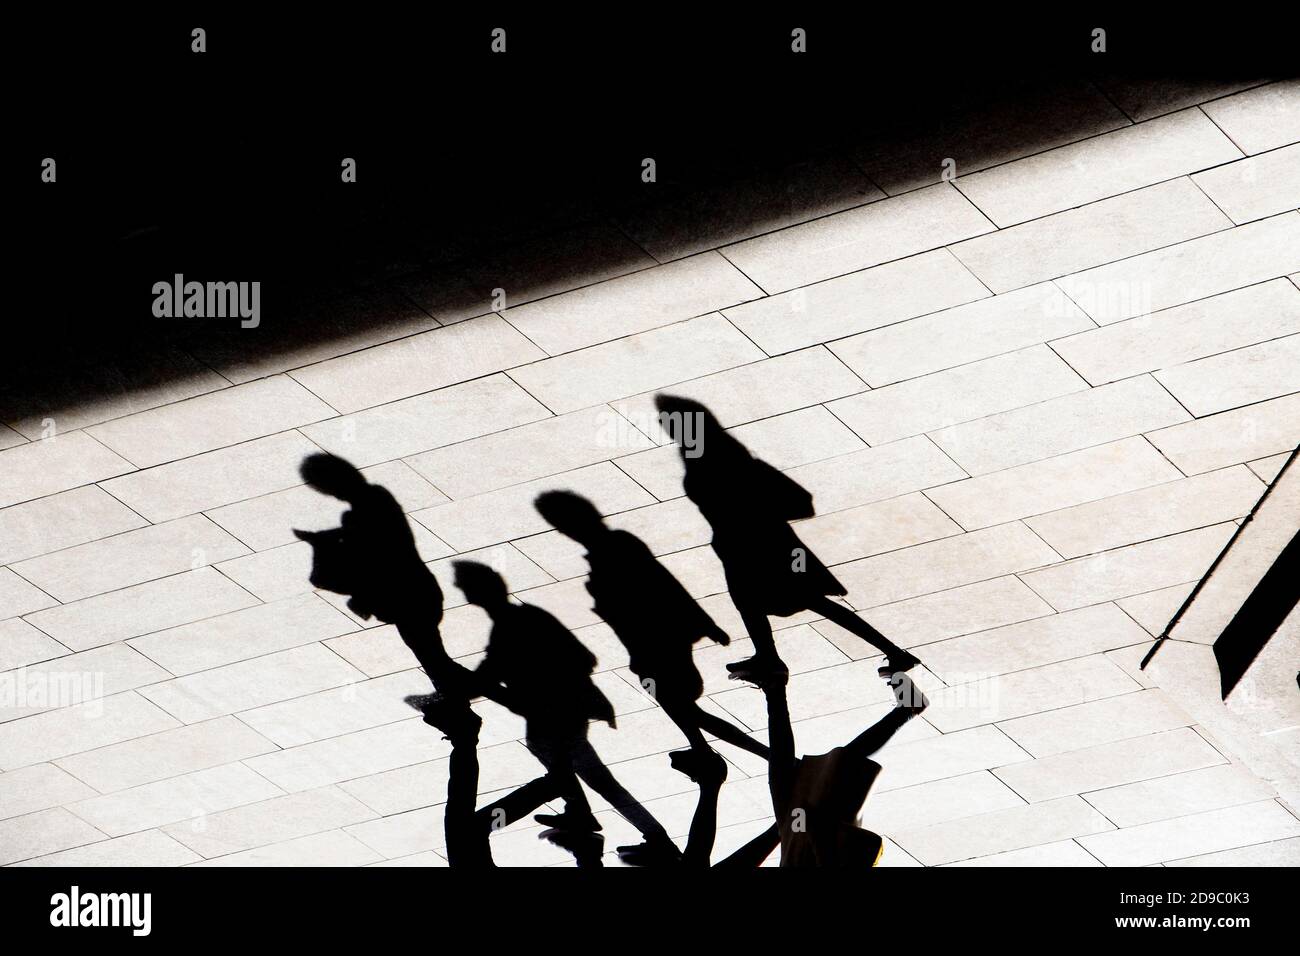 Resumen fondo sombra silueta de cuatro personas caminando pavimento de la ciudad, en alto contraste negro y blanco Foto de stock